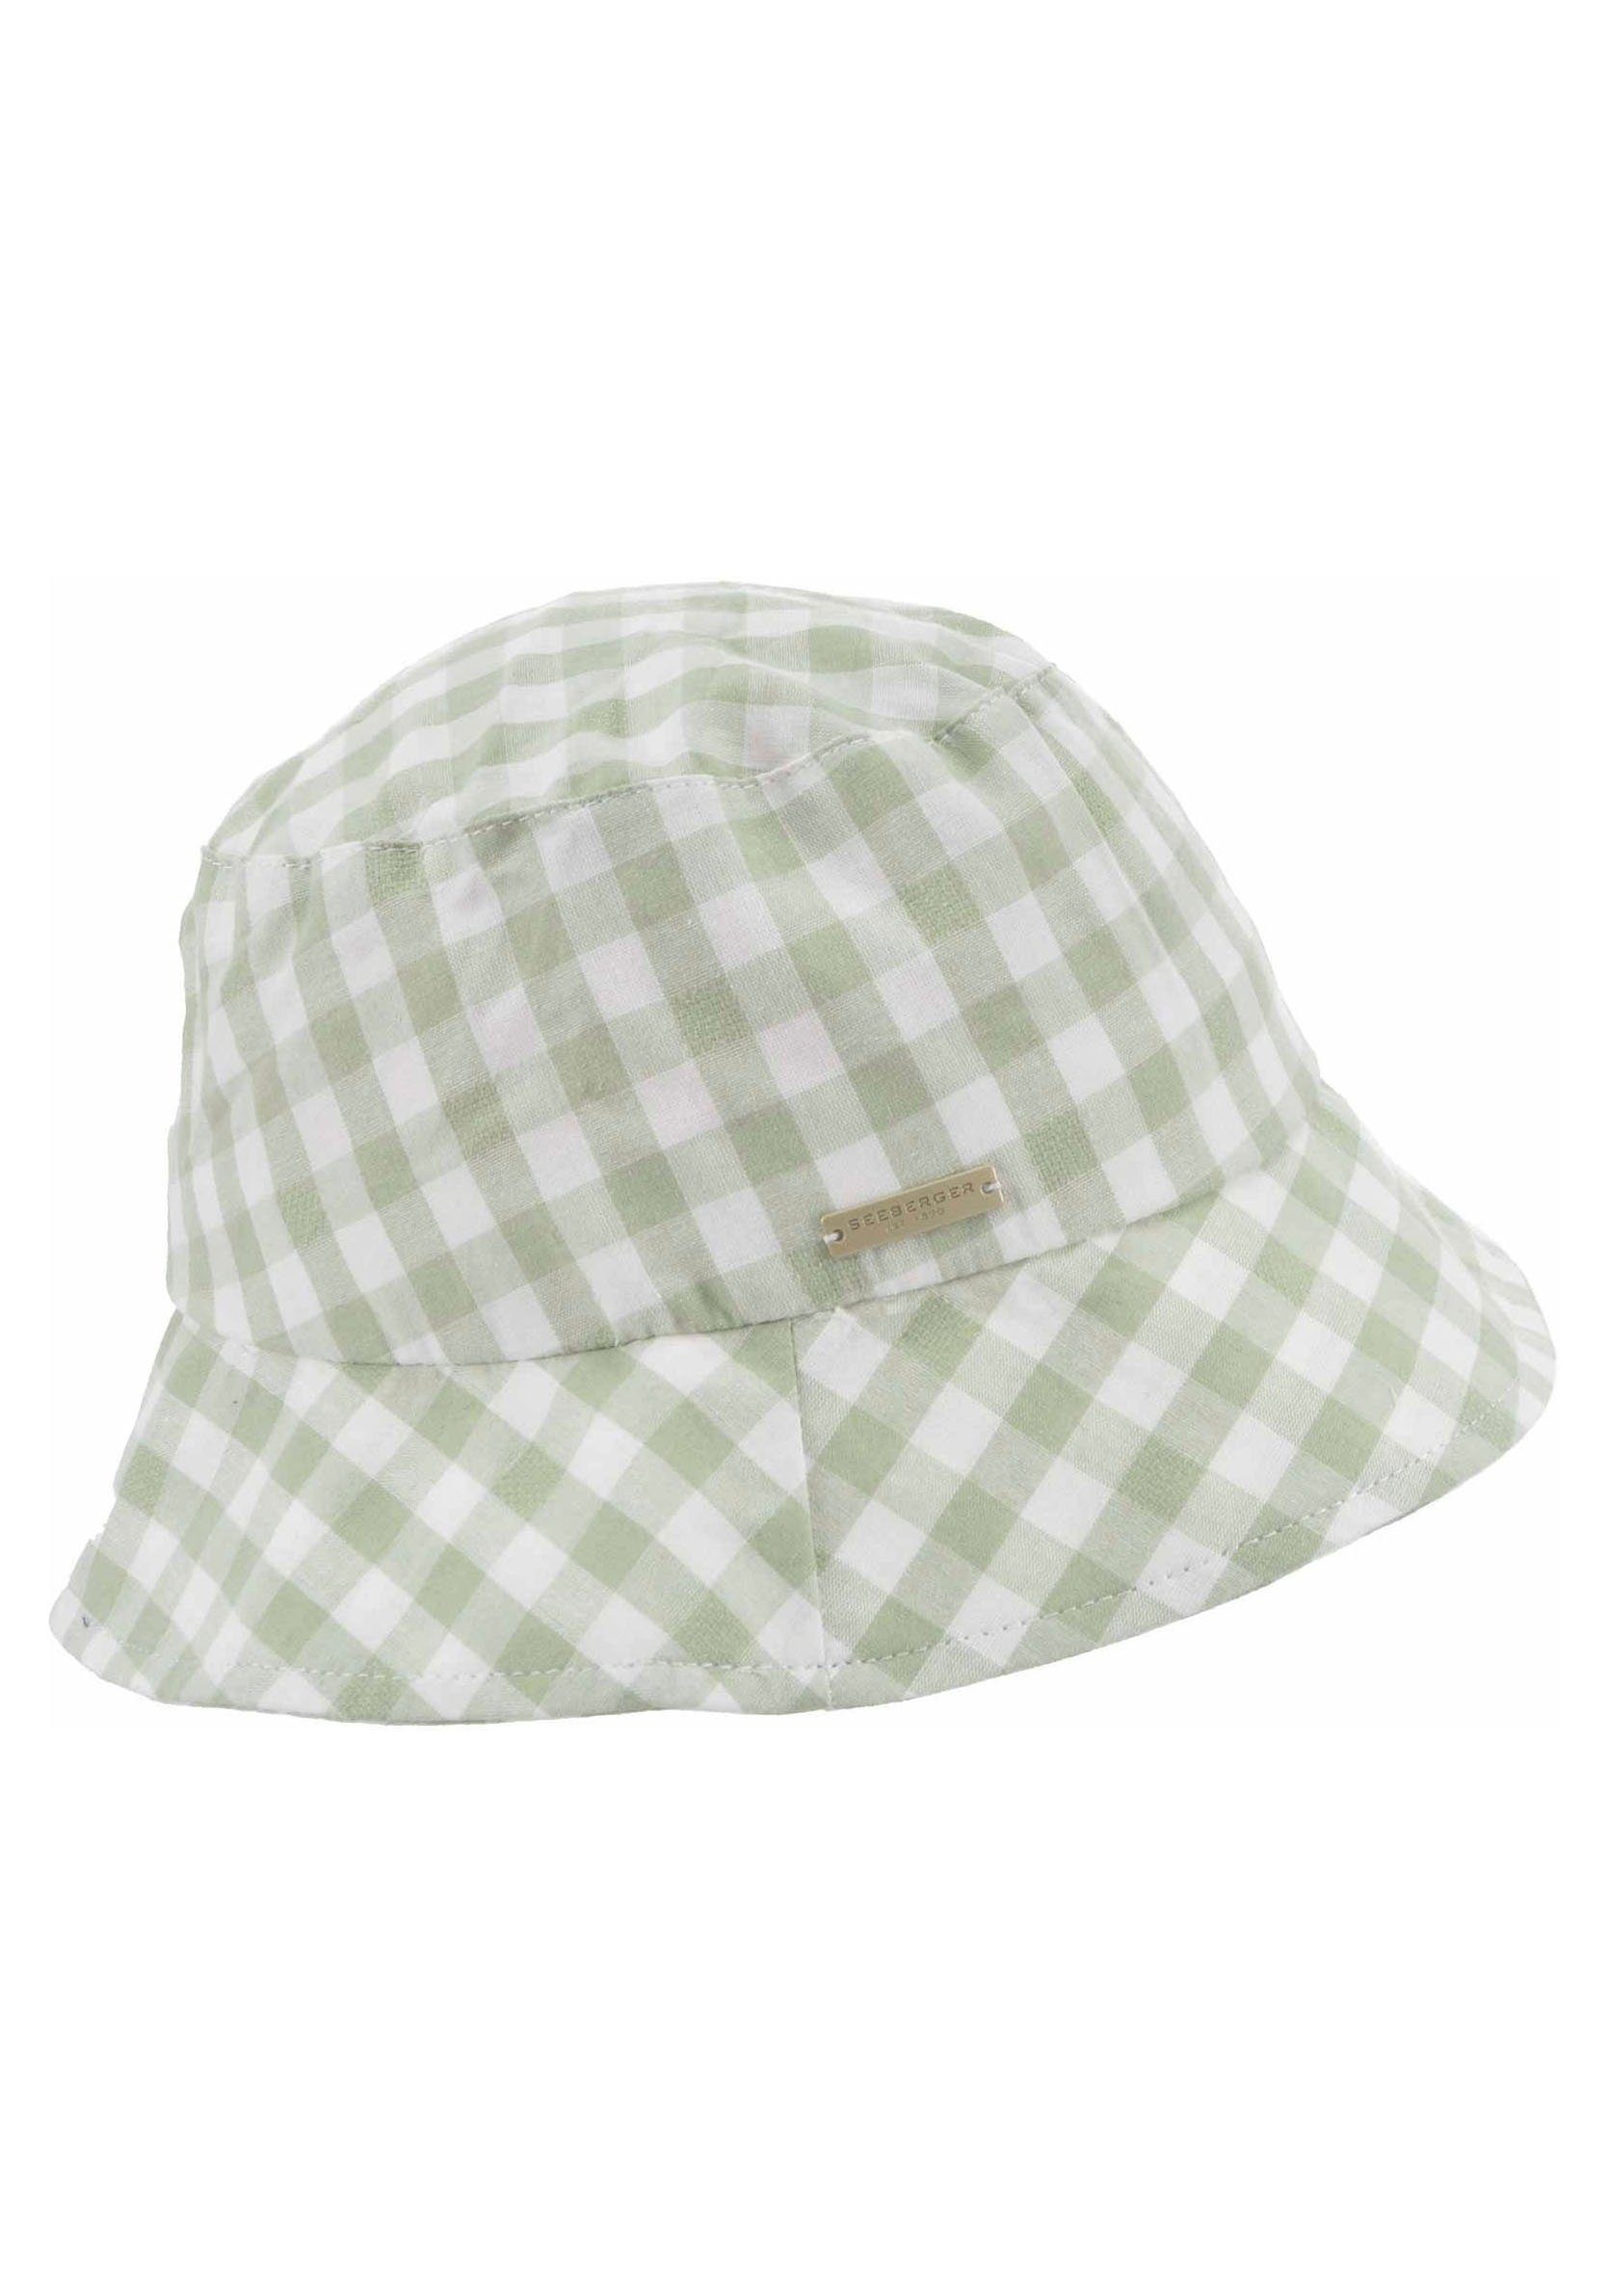 Bucket Seeberger Fischerhut weiß grün Hat